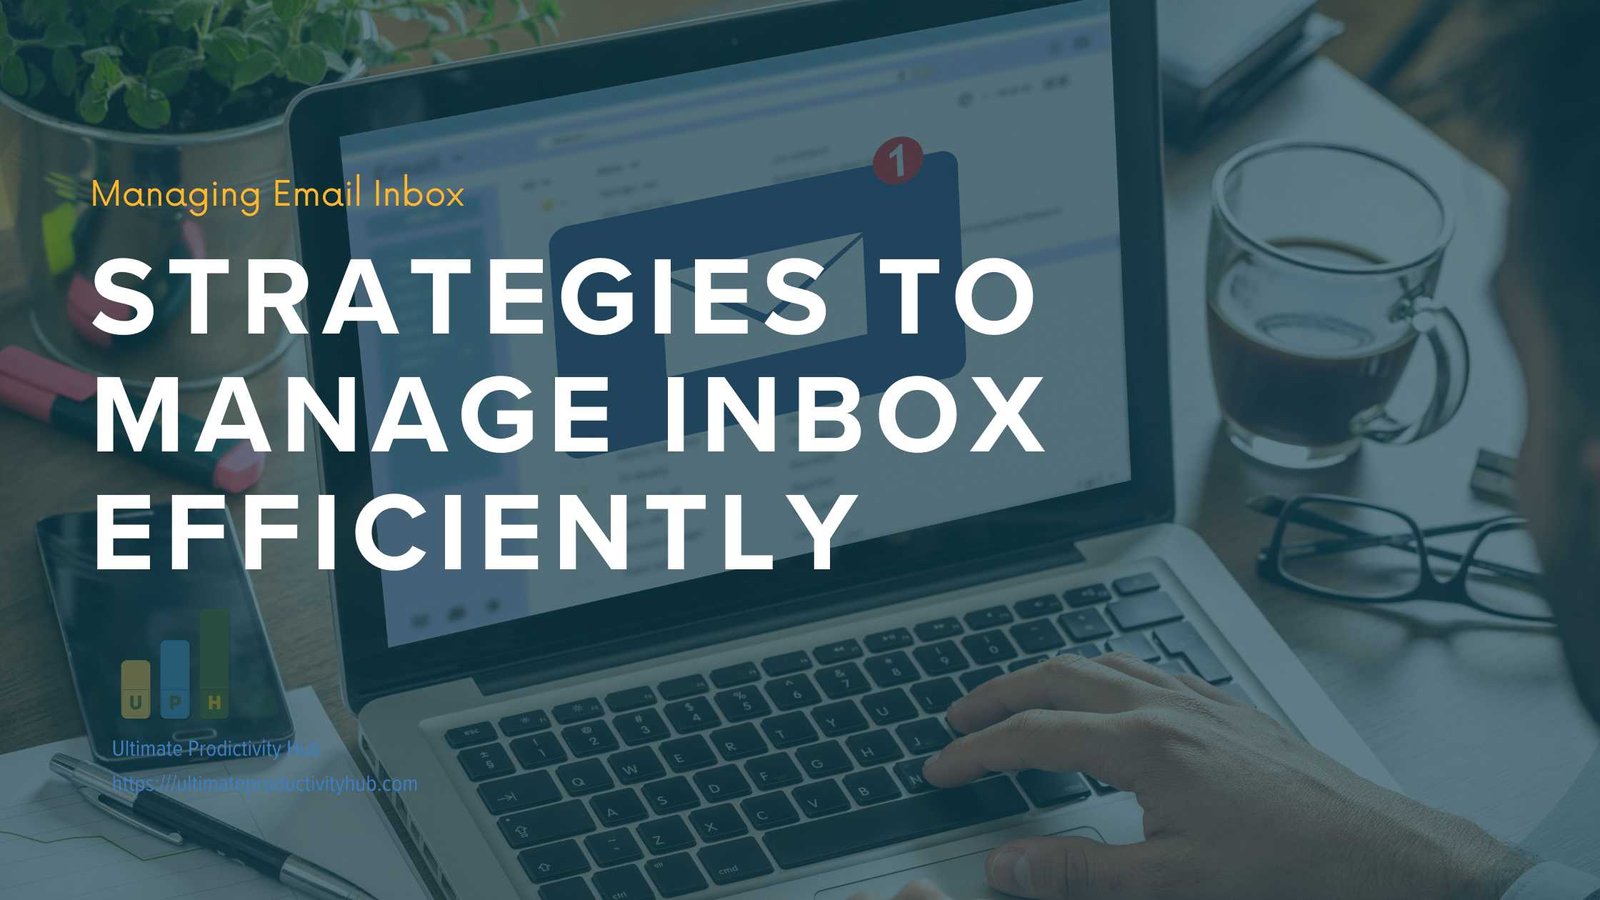 Managing Email Inbox